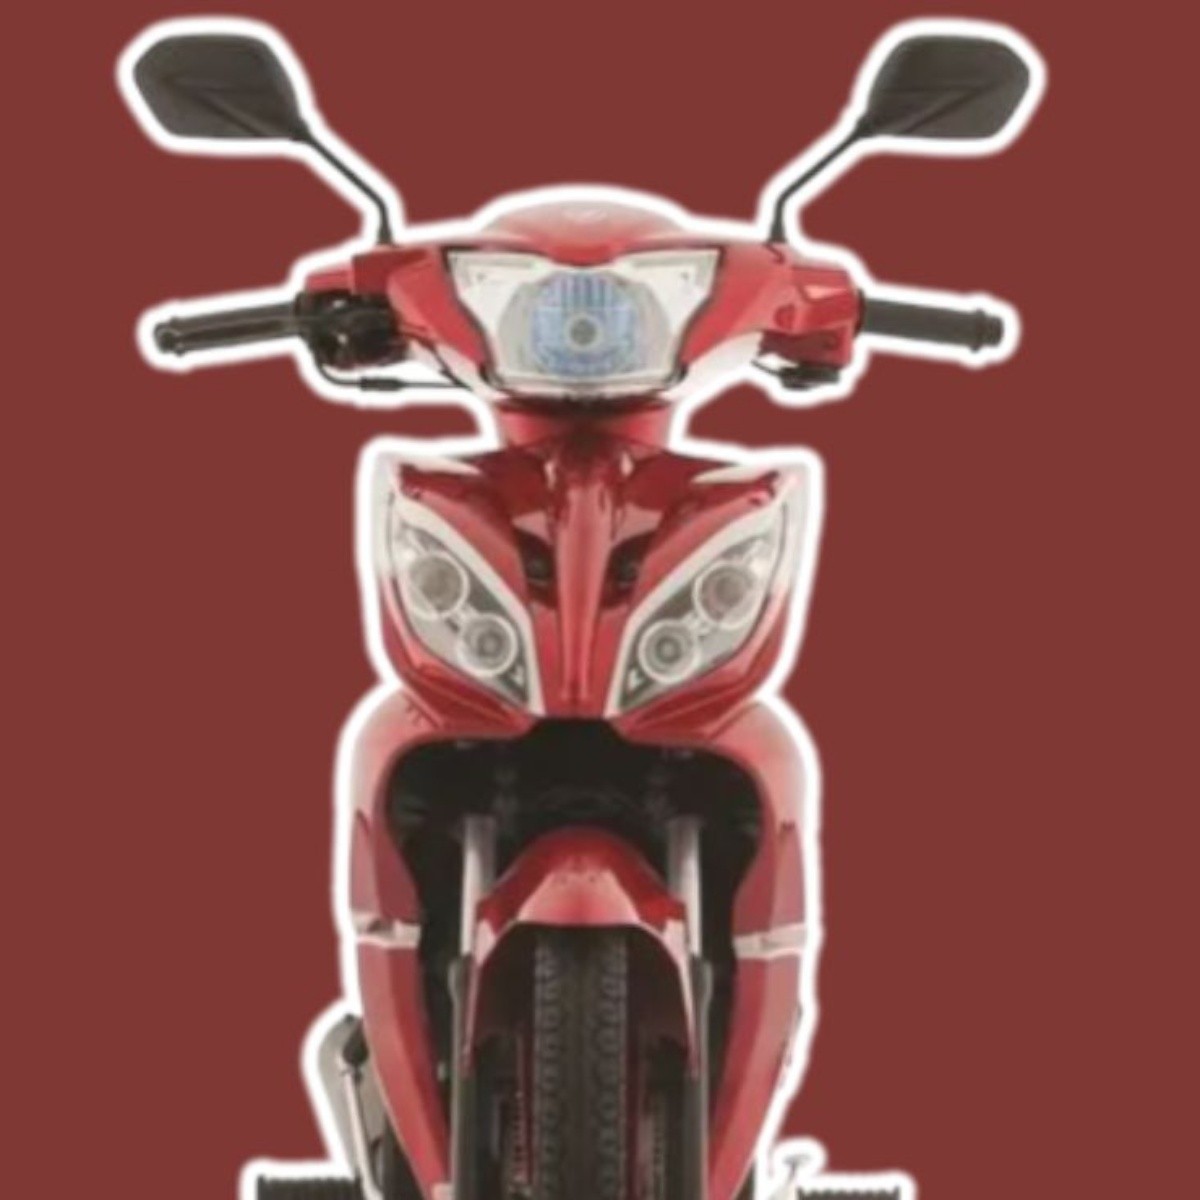 moto italika de trabajo roja, 4 velocidades y alcanza 70 km/h con $7,500 de rebaja en elektra y msi